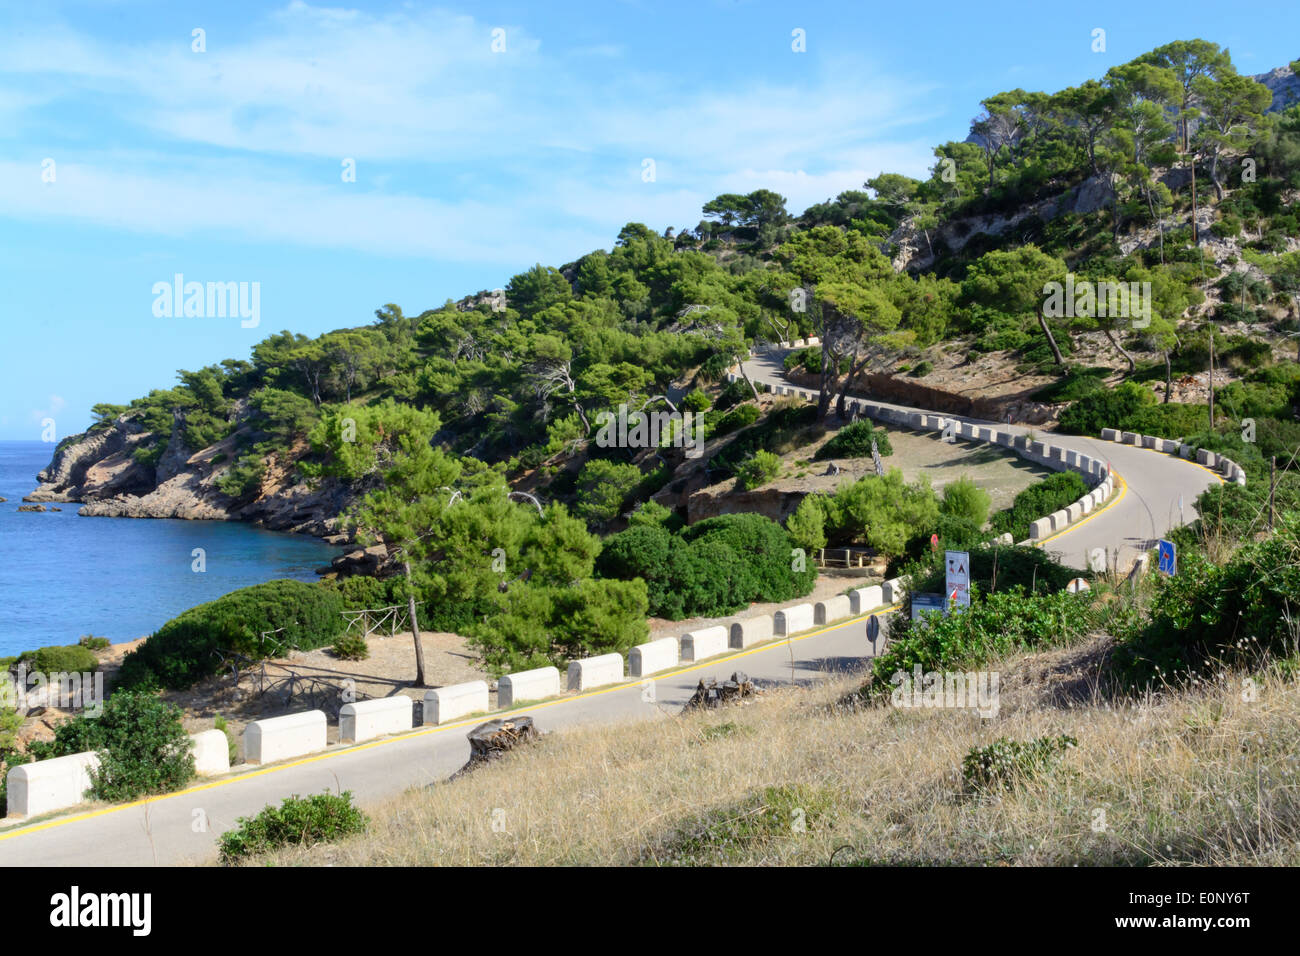 Una curva en forma de S en el verde paisaje de la península de Alcudia, Mallorca. Mallorca, Islas Baleares, España en octubre. Foto de stock